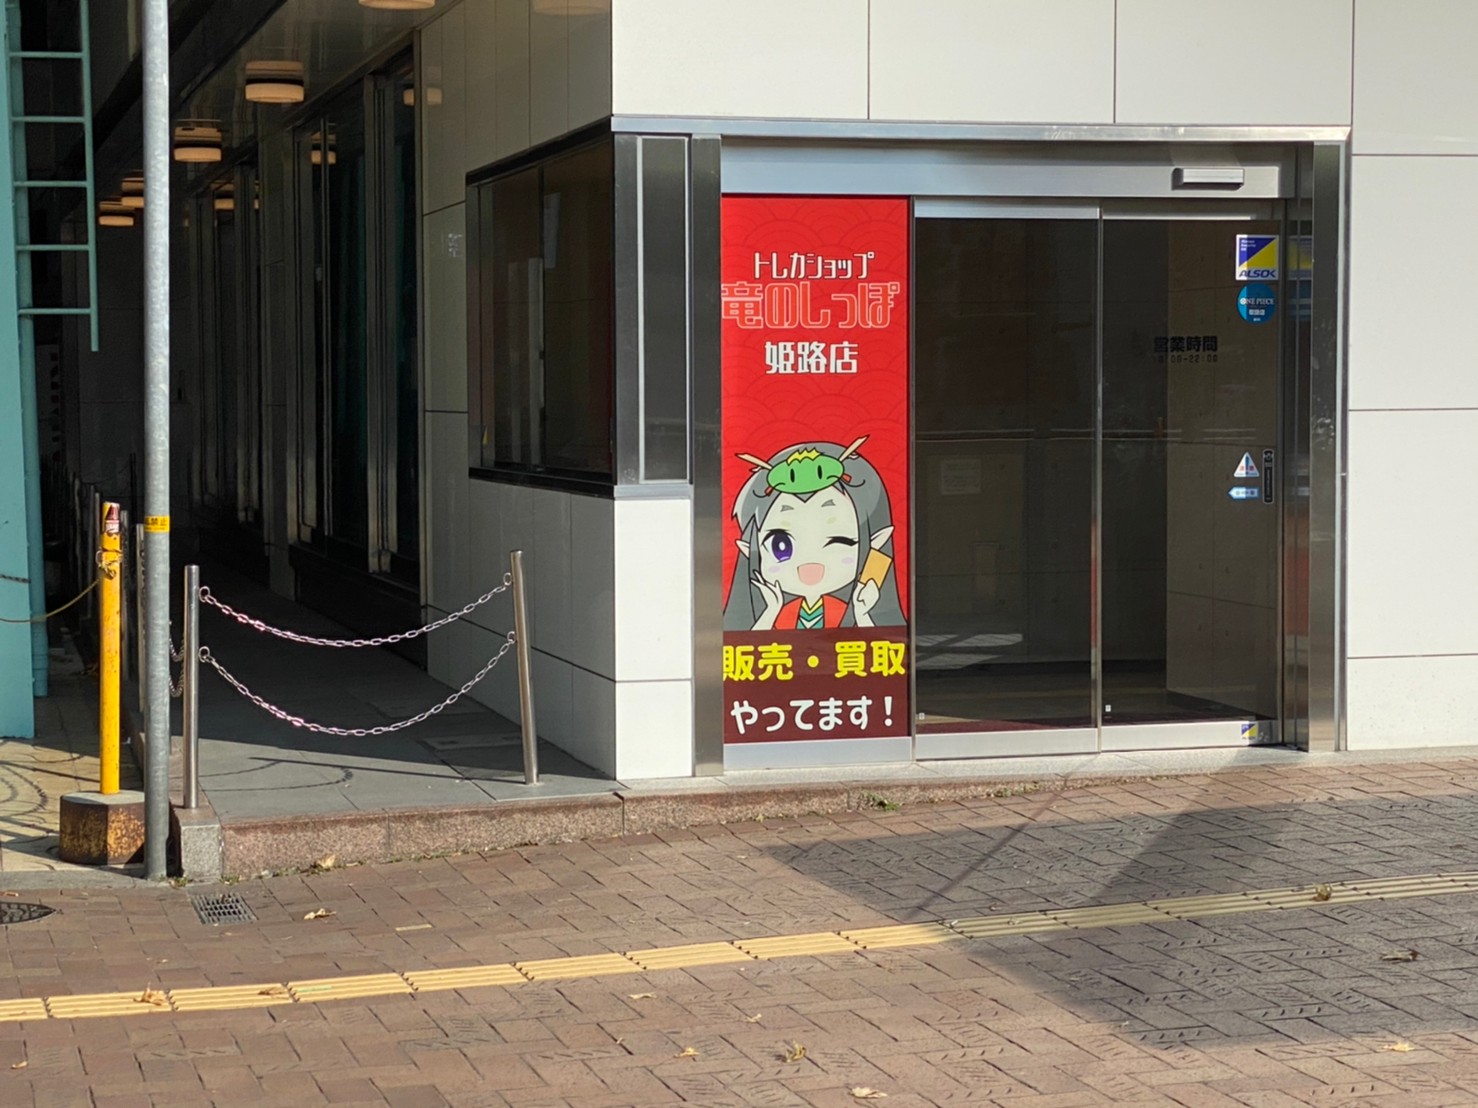 トレーディングカードショップ 竜のしっぽ姫路店がオープンしてる 姫路の種